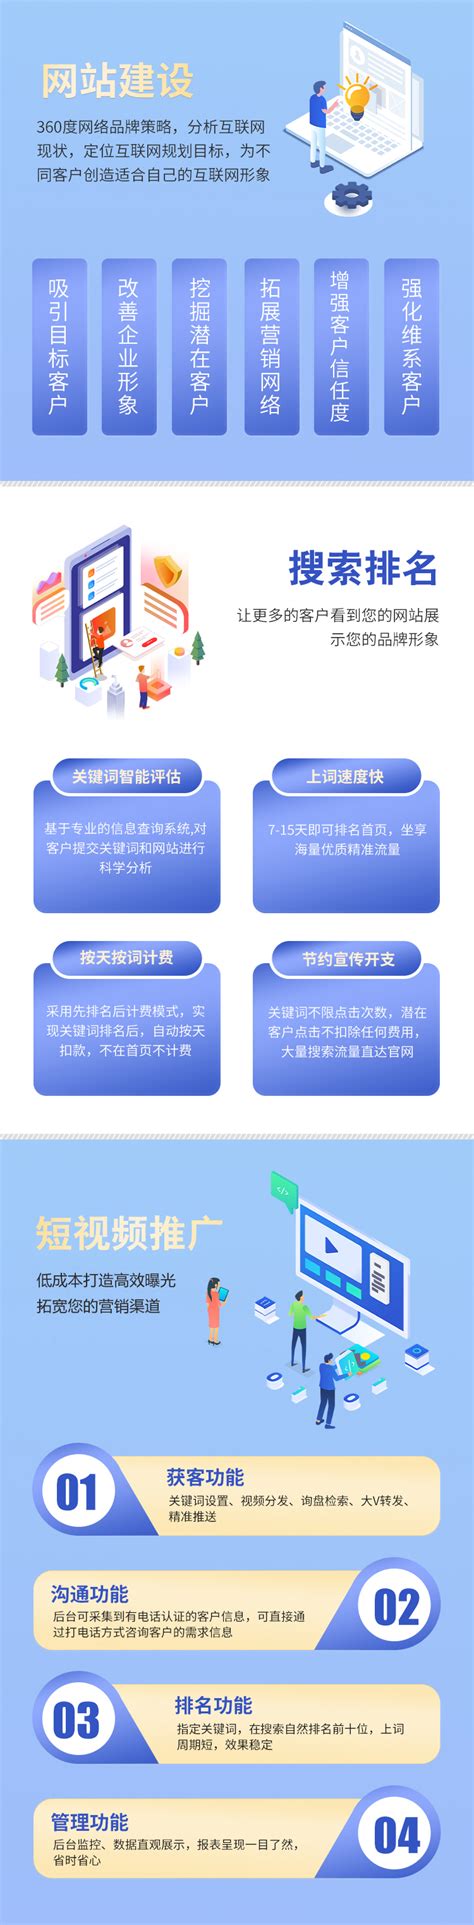 重庆企业网站建设小程序